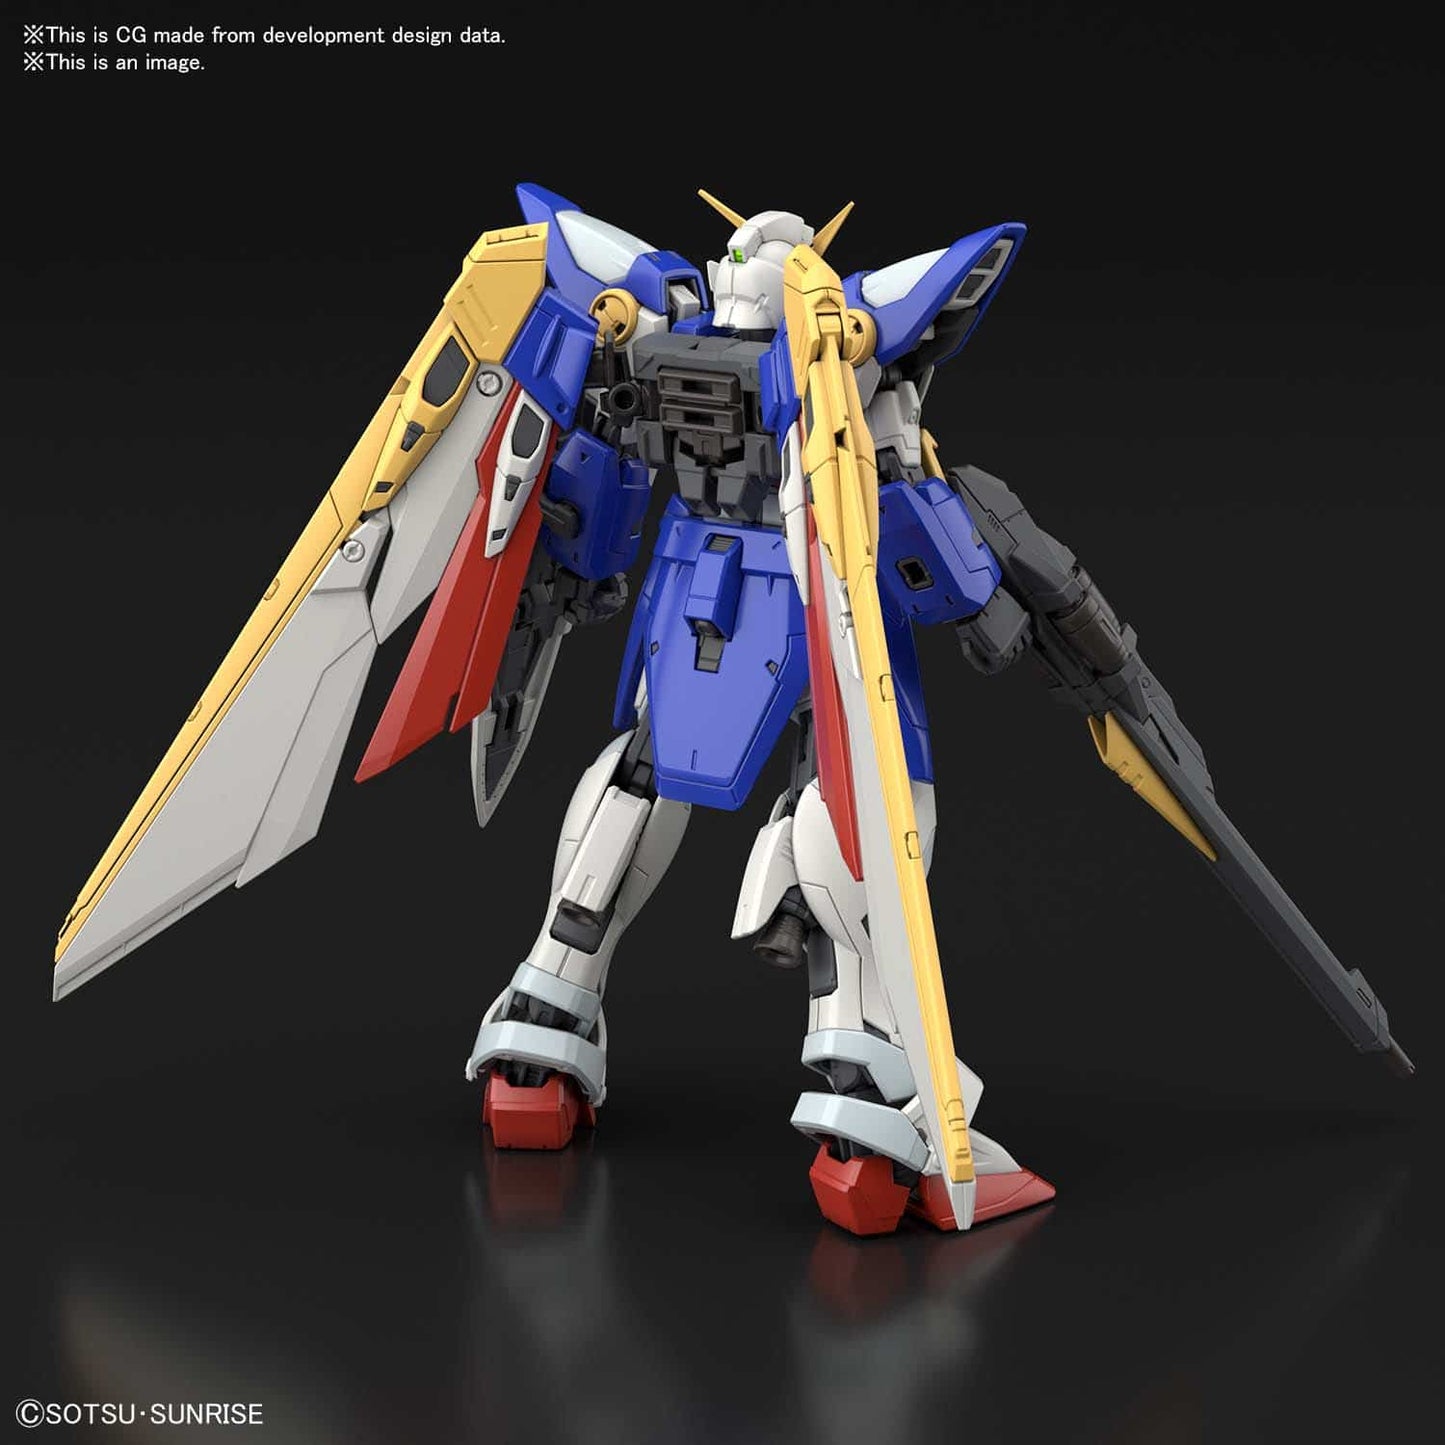 RG #35 Wing Gundam XXXG-01W